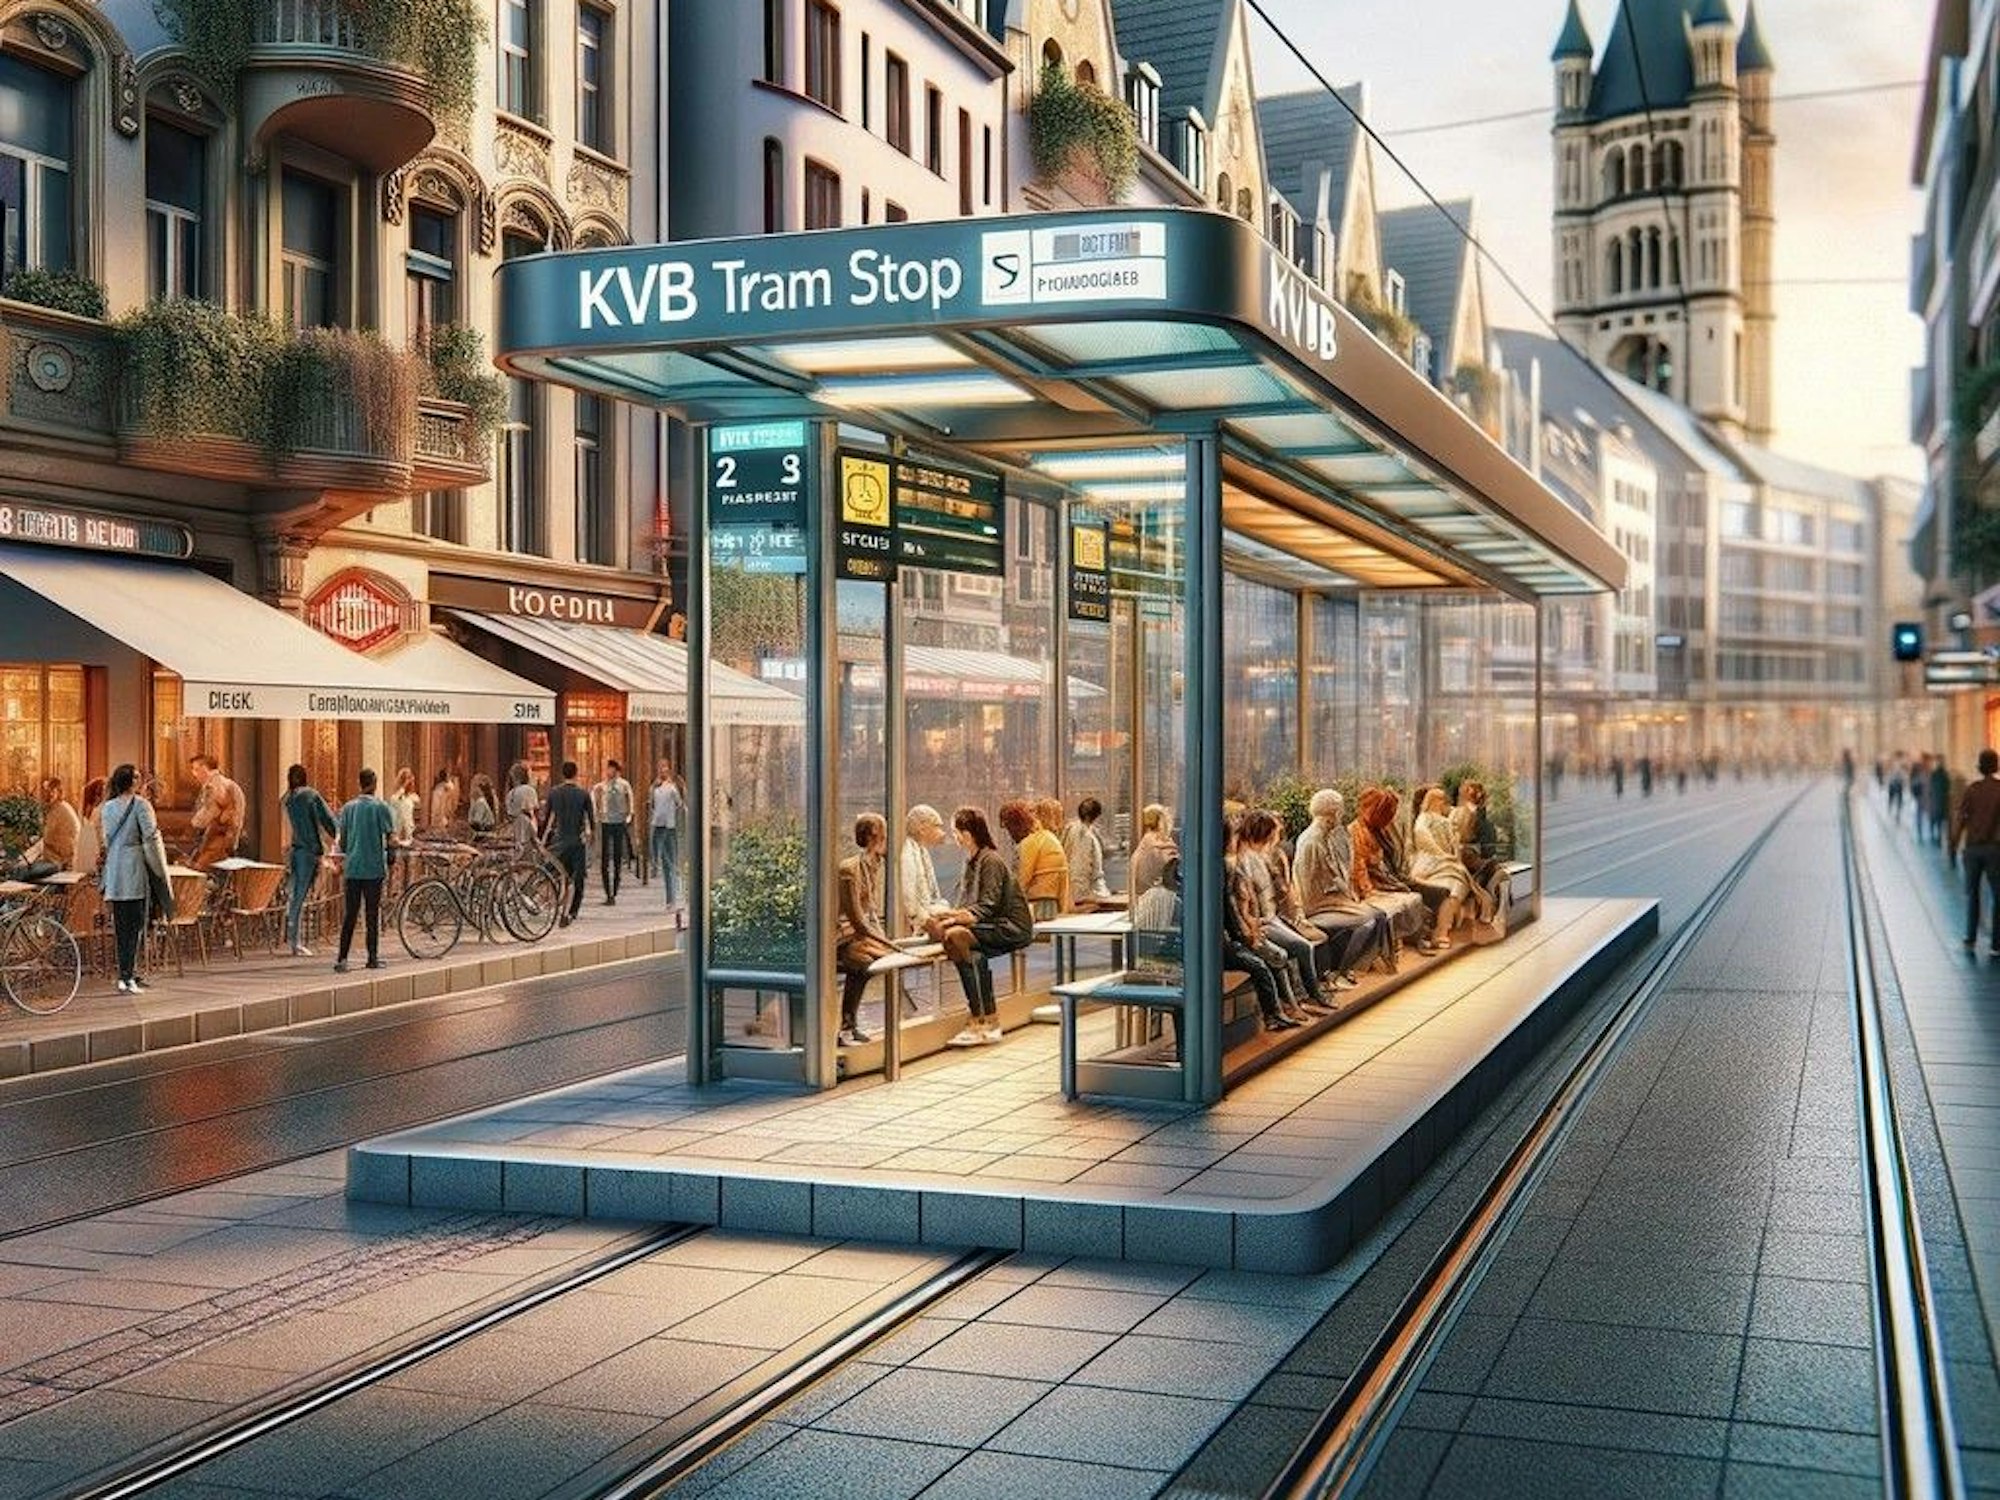 Das maschinell erstellte Bild von ChatGPT zeigt eine KVB-Haltestelle im Bereich der Zülpicher Straße in Köln.